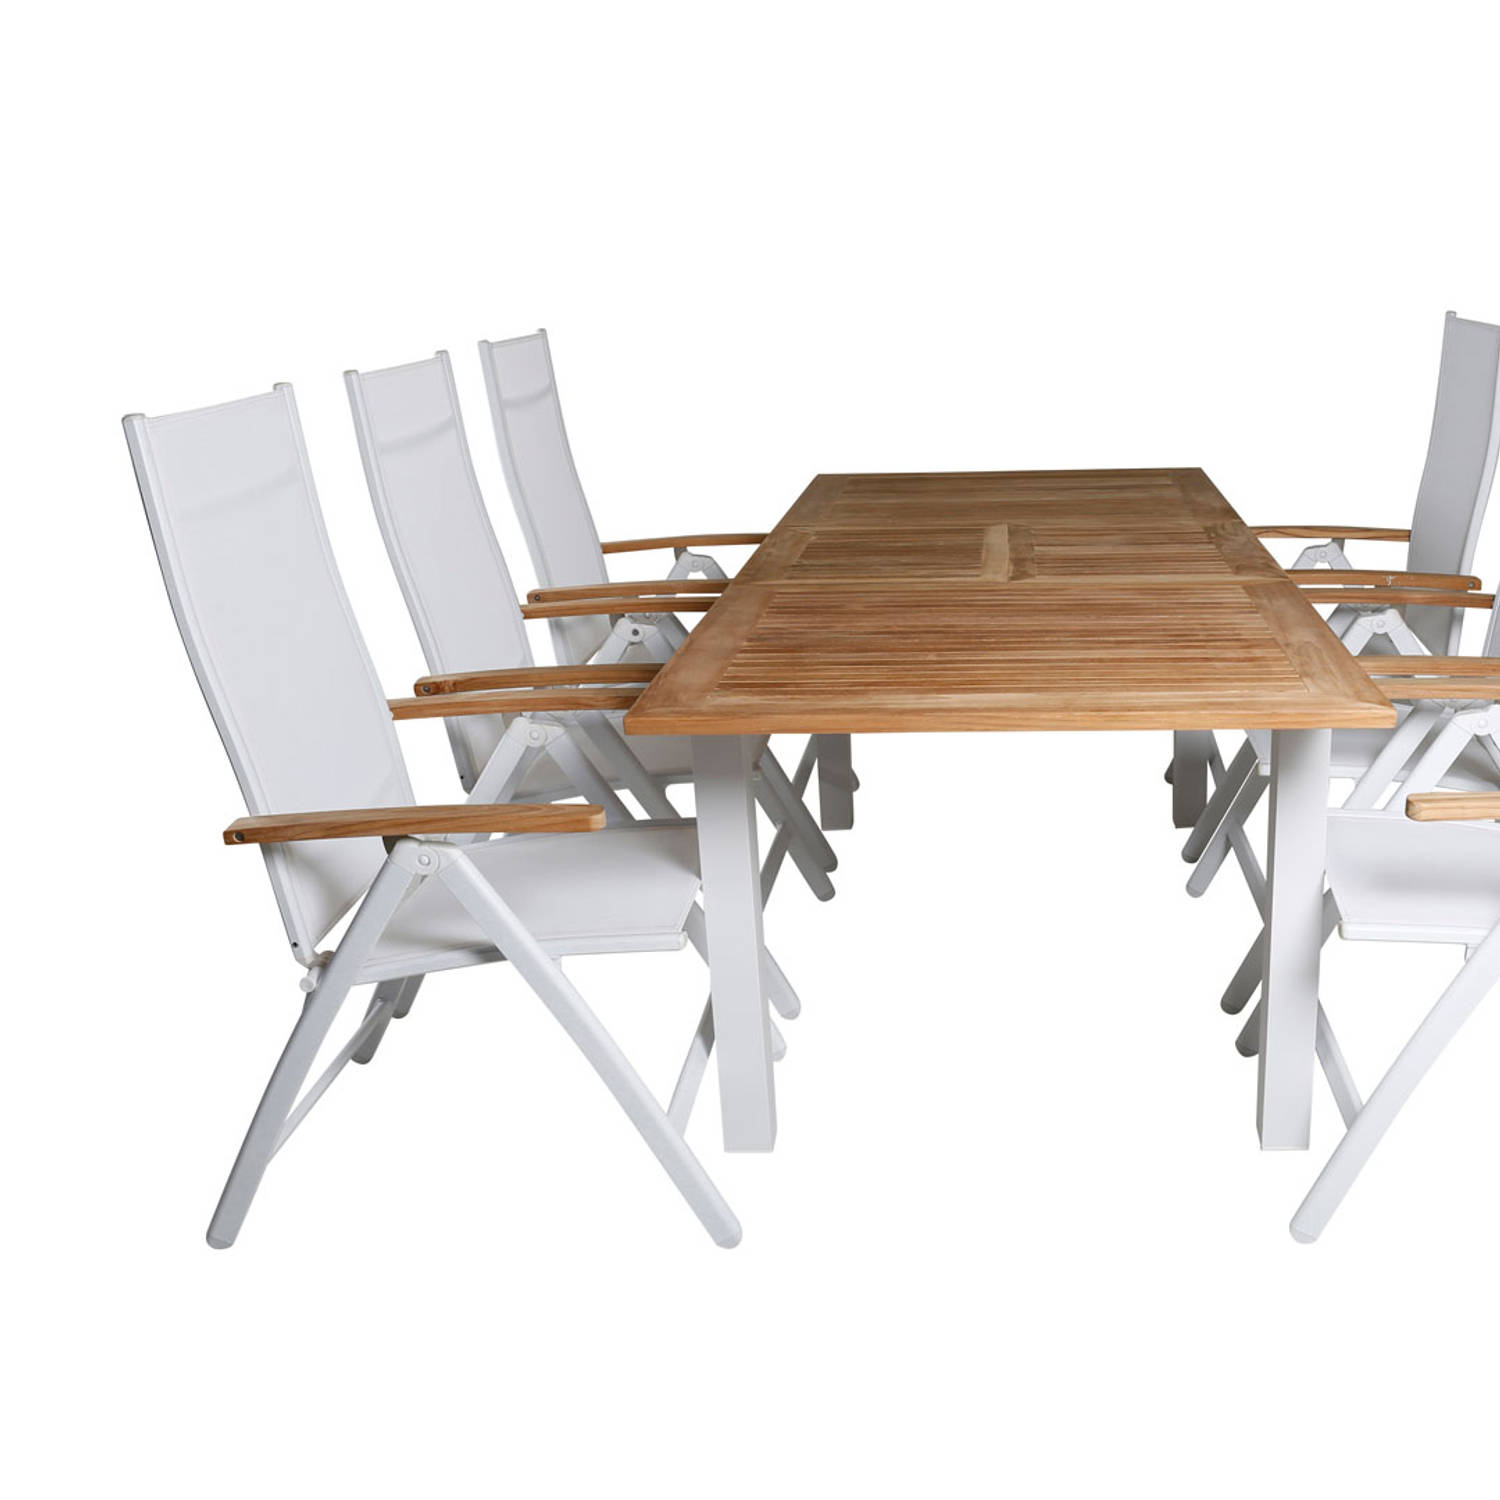 Panama tuinmeubelset tafel 90x152/210cm en 6 stoel Panama wit, naturel.